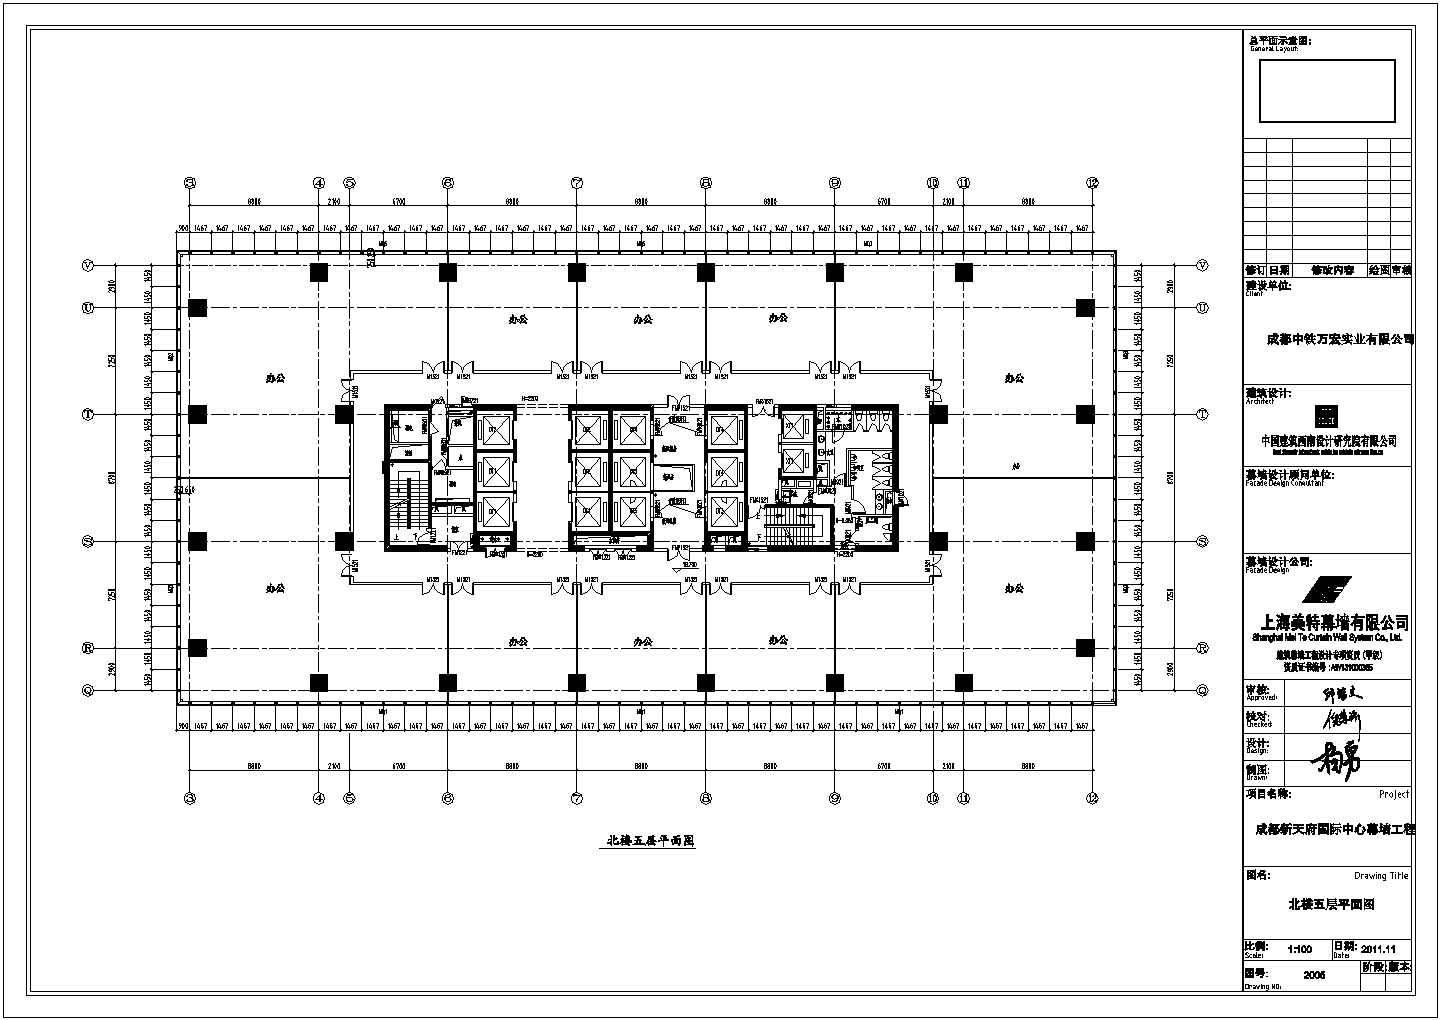 成都中信广场32层框架剪力墙结构主楼幕墙建筑设计施工图